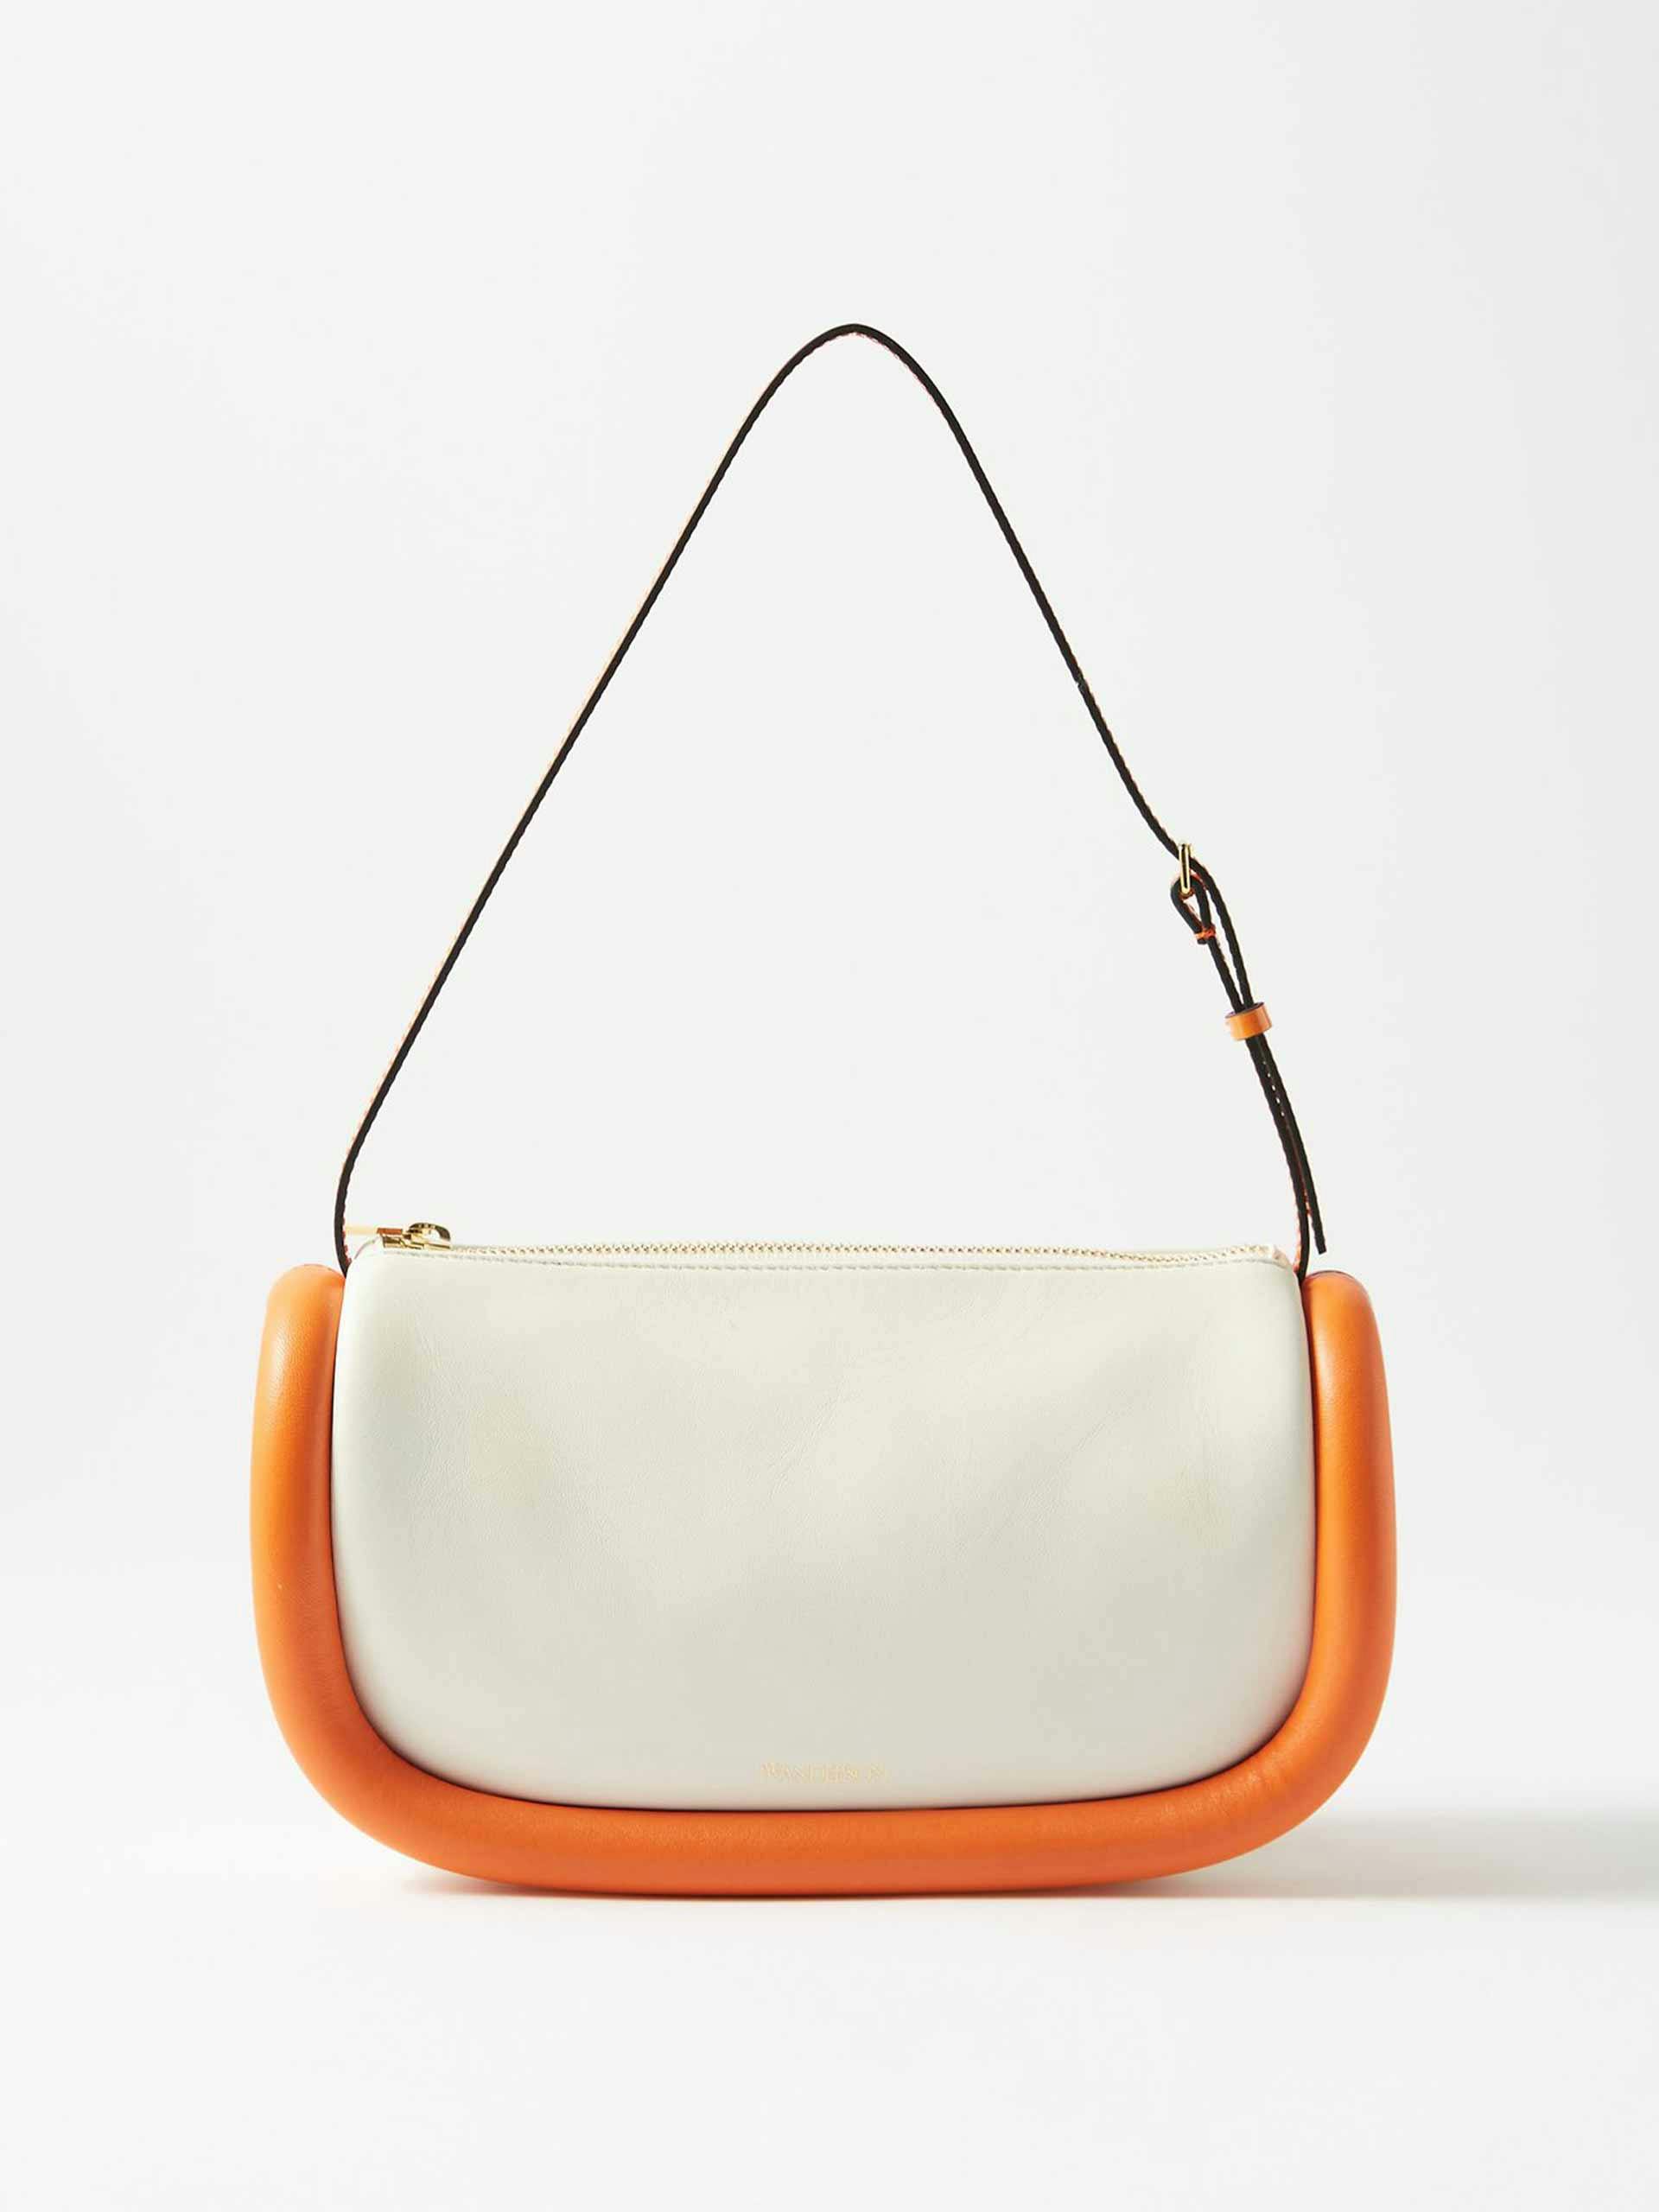 White and orange leather shoulder bag